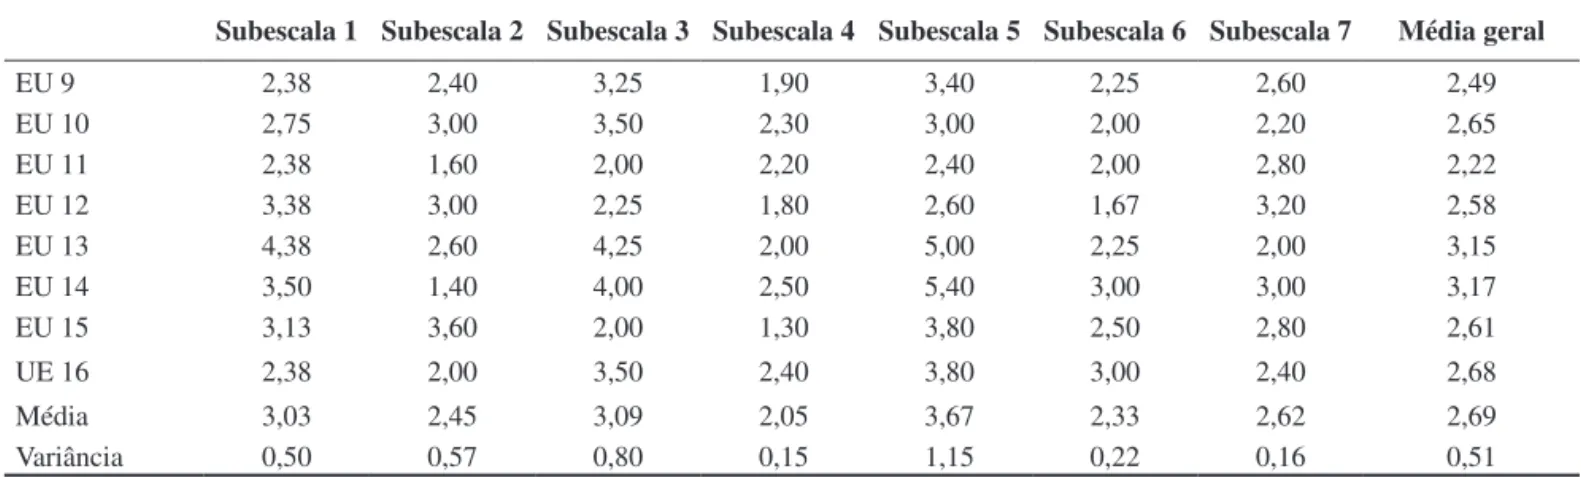 Tabela 2. Médias, limites (máximos e mínimos) e variâncias das subescalas da ECERS-R por EU.